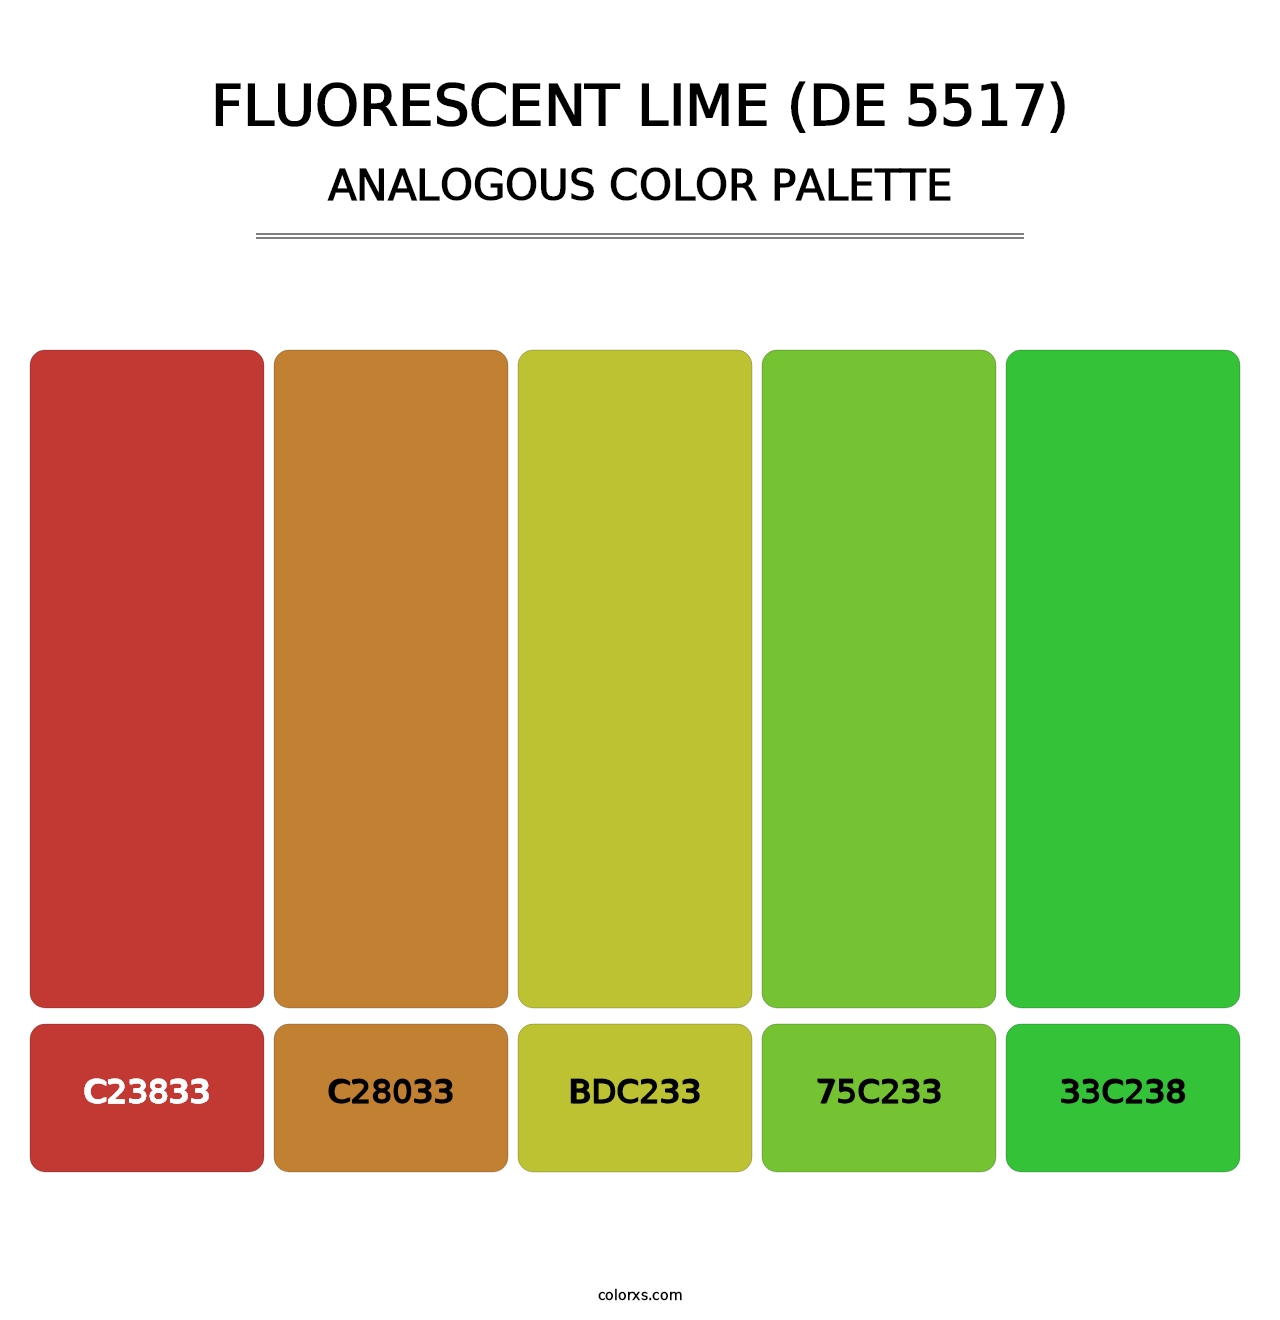 Fluorescent Lime (DE 5517) - Analogous Color Palette